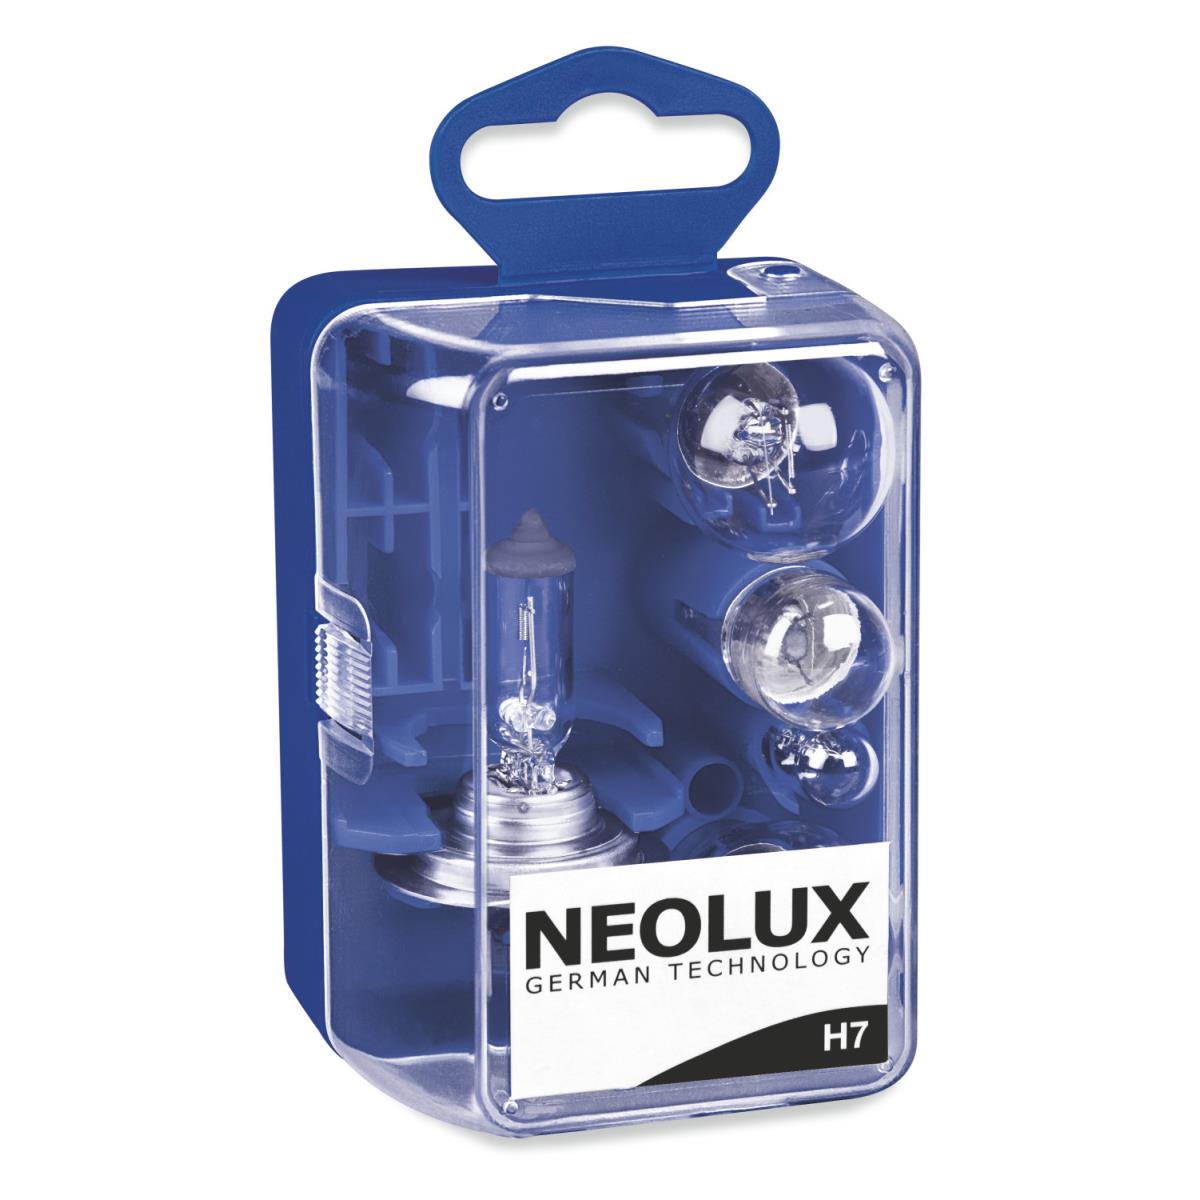 NEOLUX  Ersatzlampen  Box  N499KIT H7+P21W+P21/5W+R5W+W5W